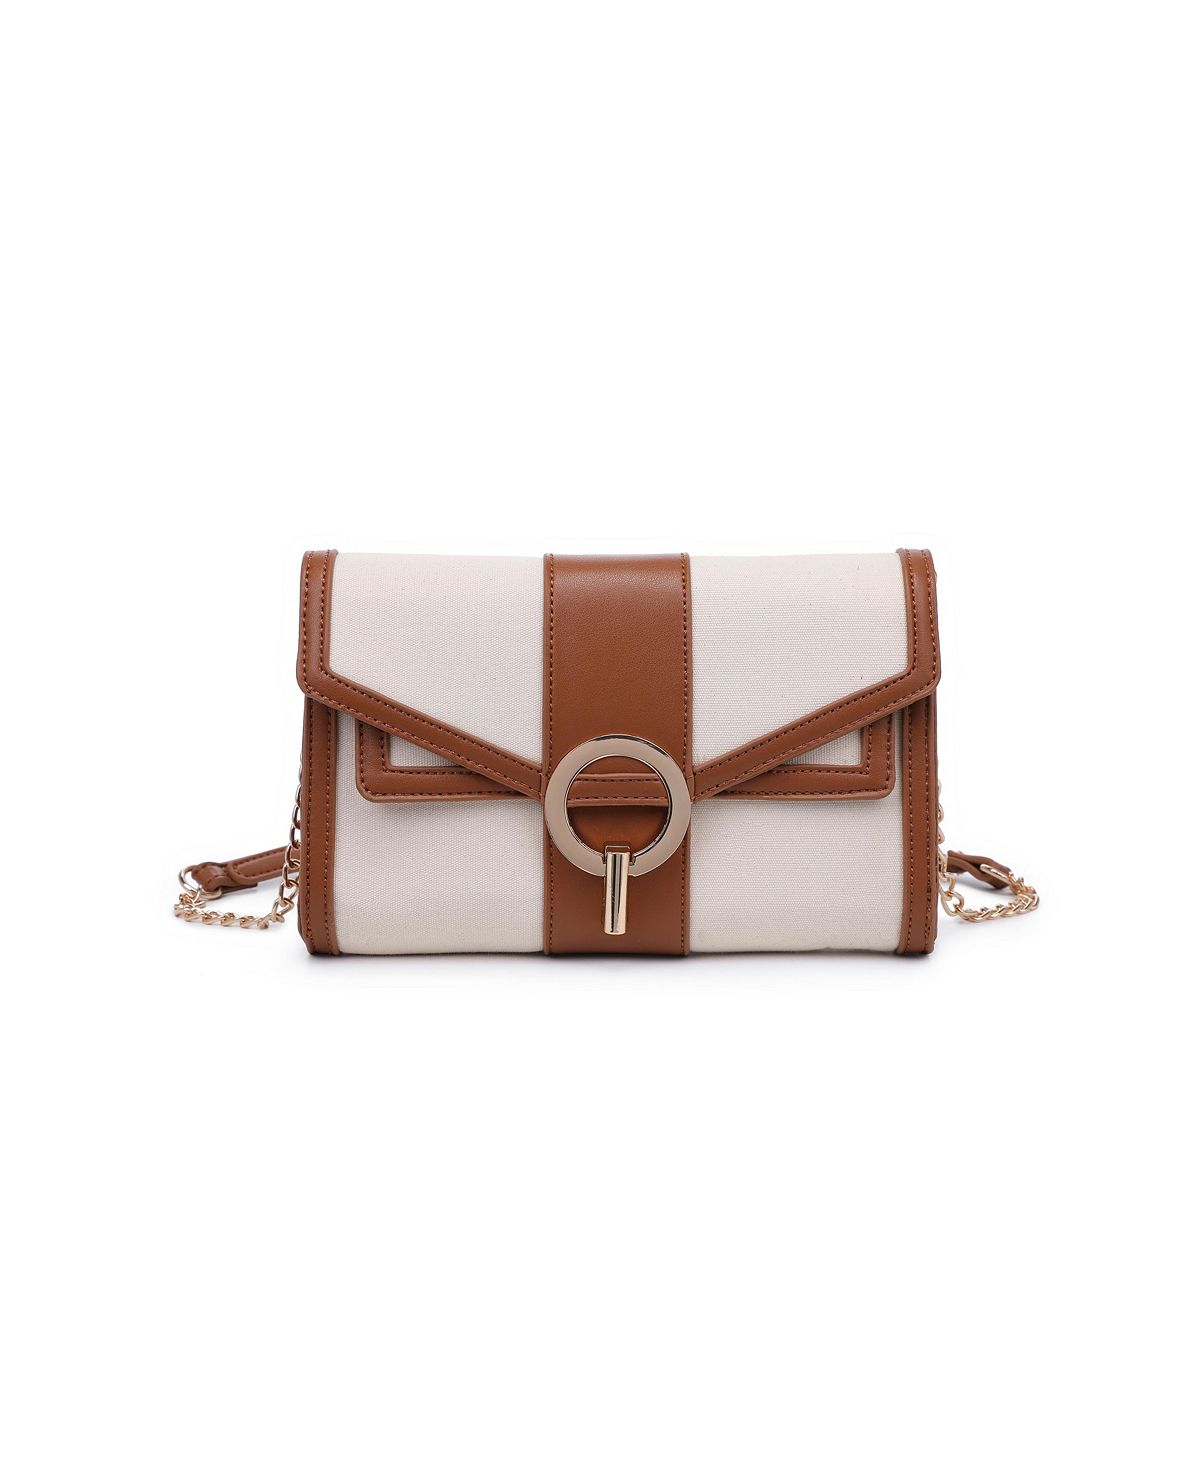 Маленькая сумка через плечо Loxley Moda Luxe маленькая сумка через плечо blake moda luxe